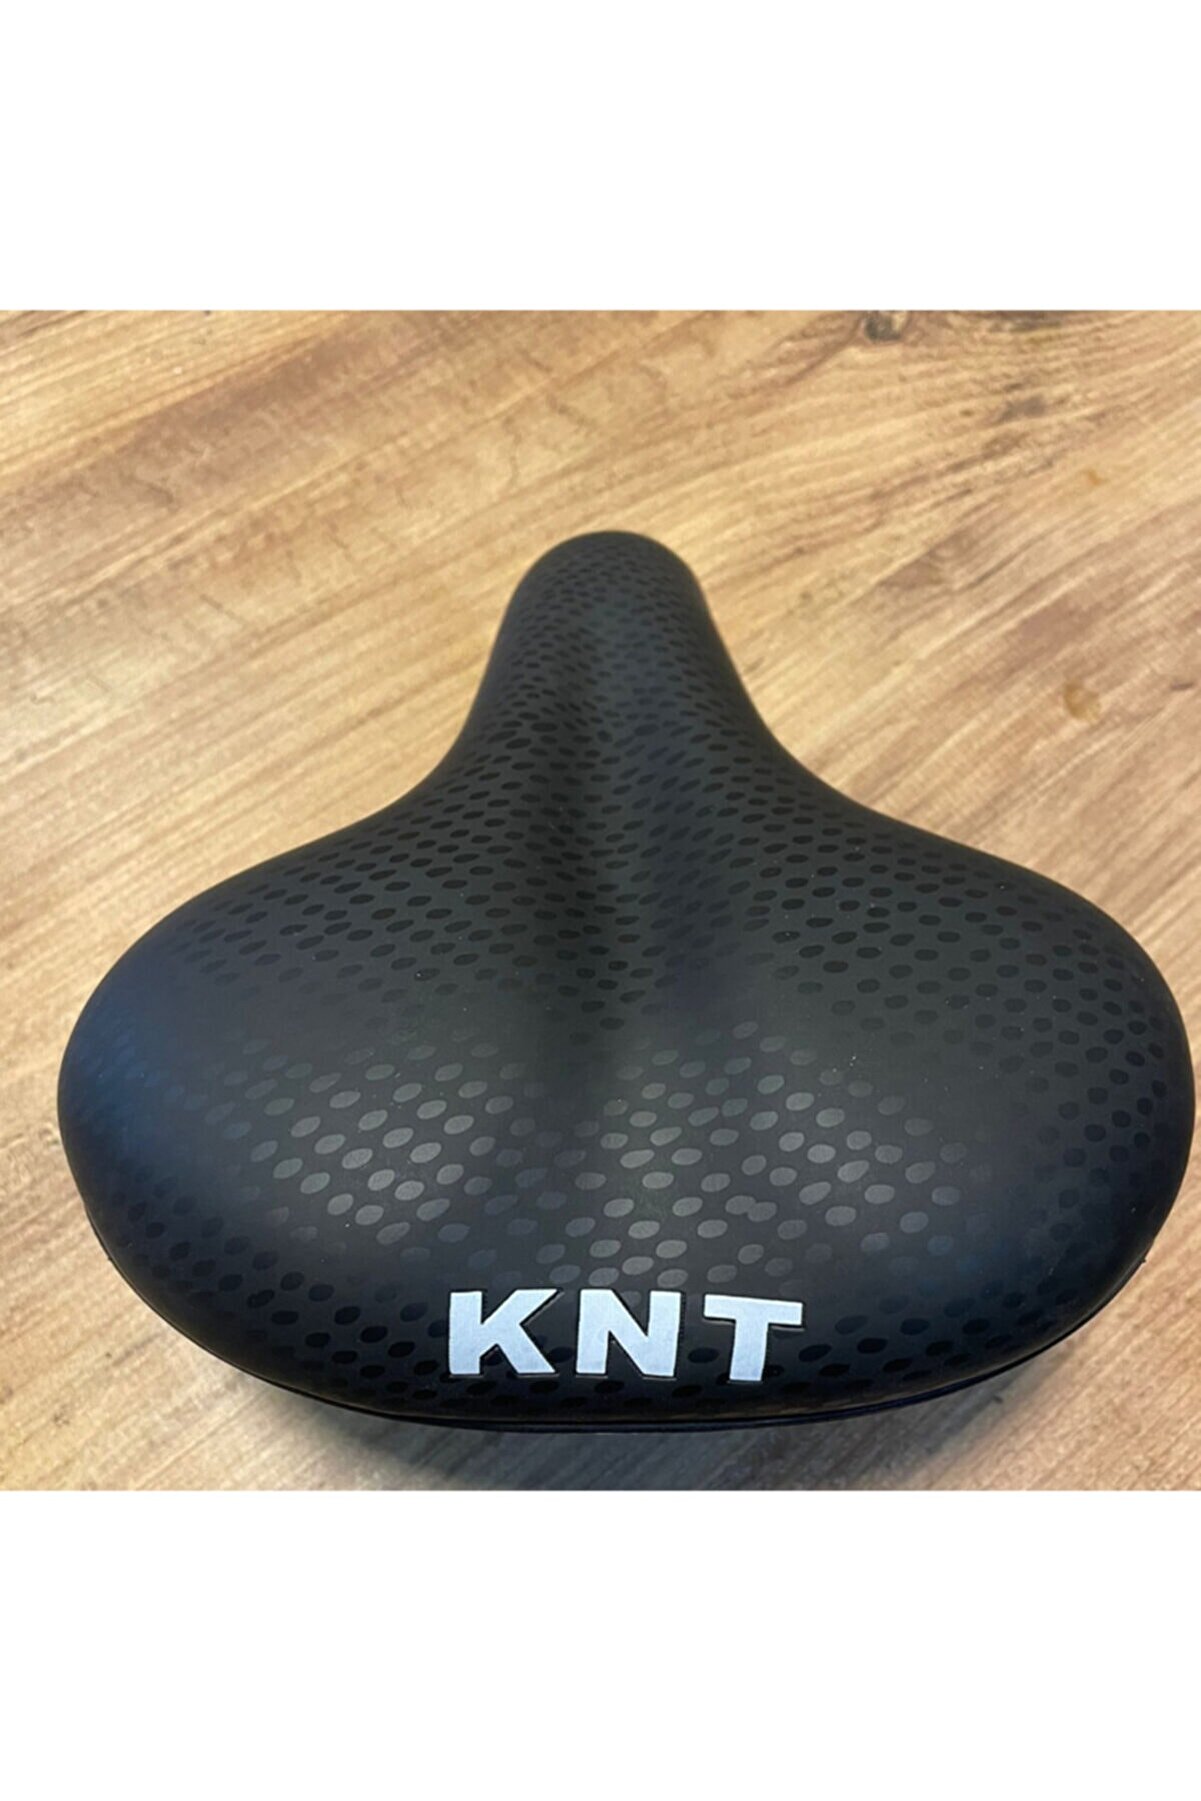 KNT Soft Geniş Yaylı Bisiklet Selesi Yumuşak Ve Rahat (koltuk)